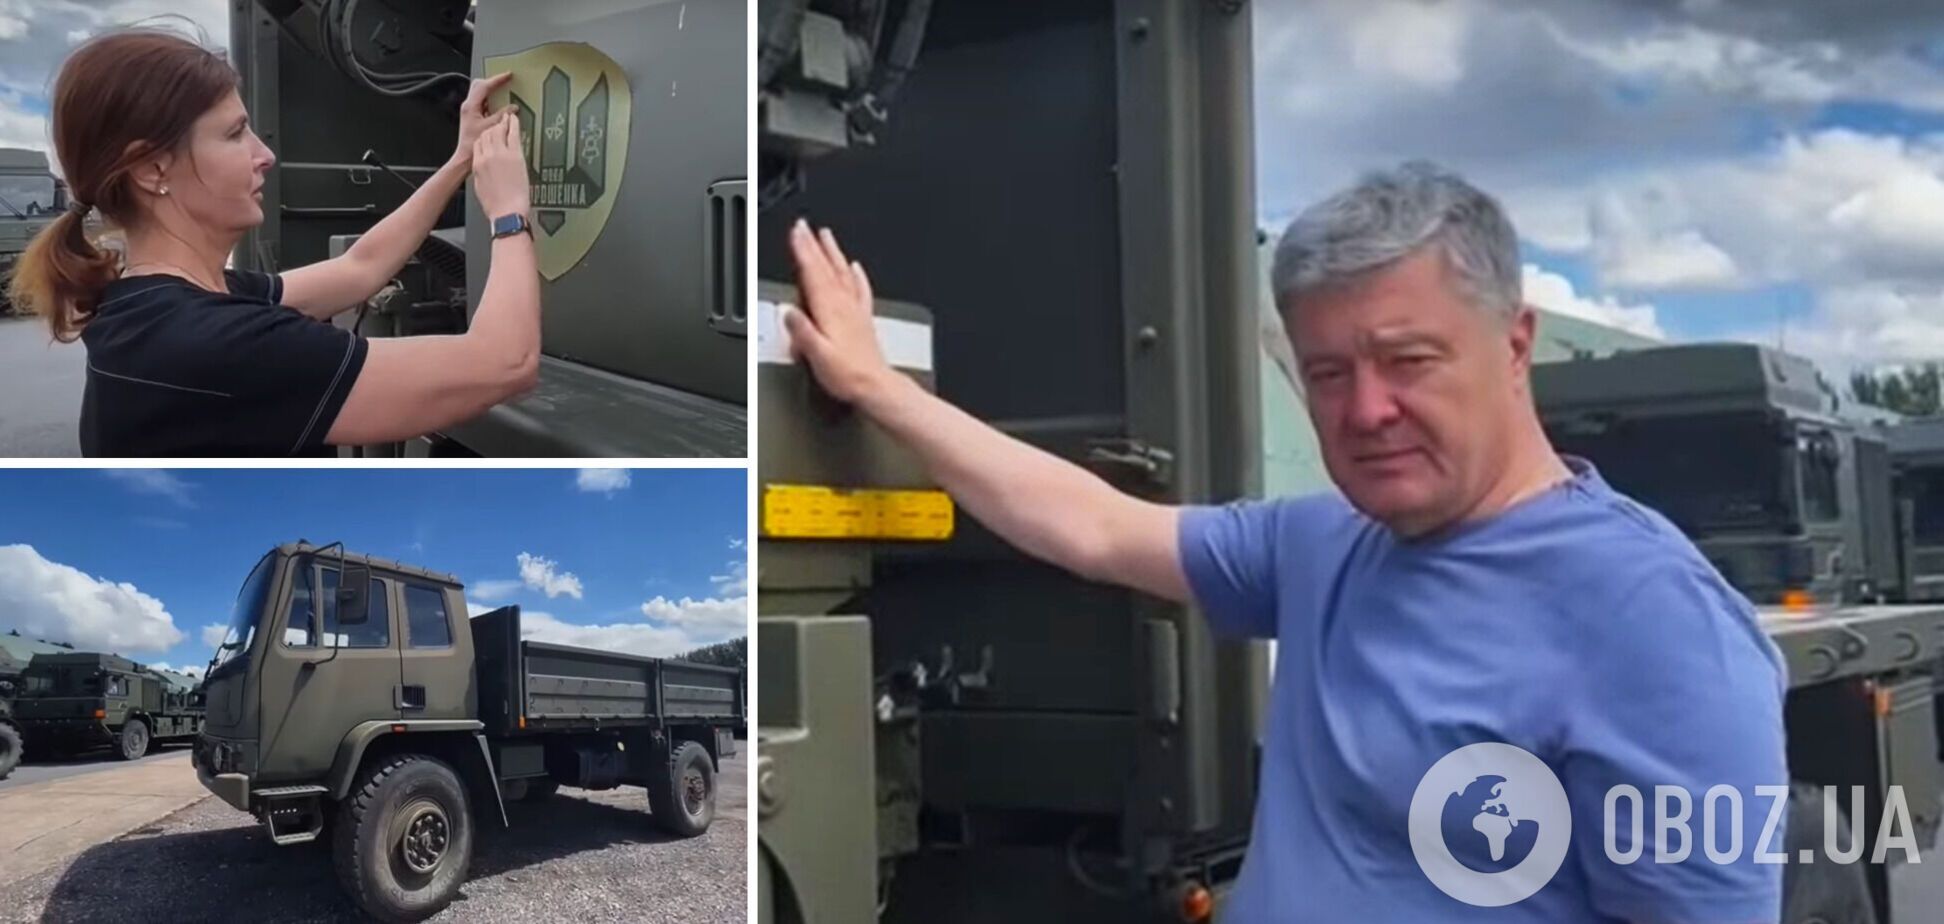 Перша партія вантажівок для ЗСУ, придбаних в Британії, вирушила в Україну, – Порошенко